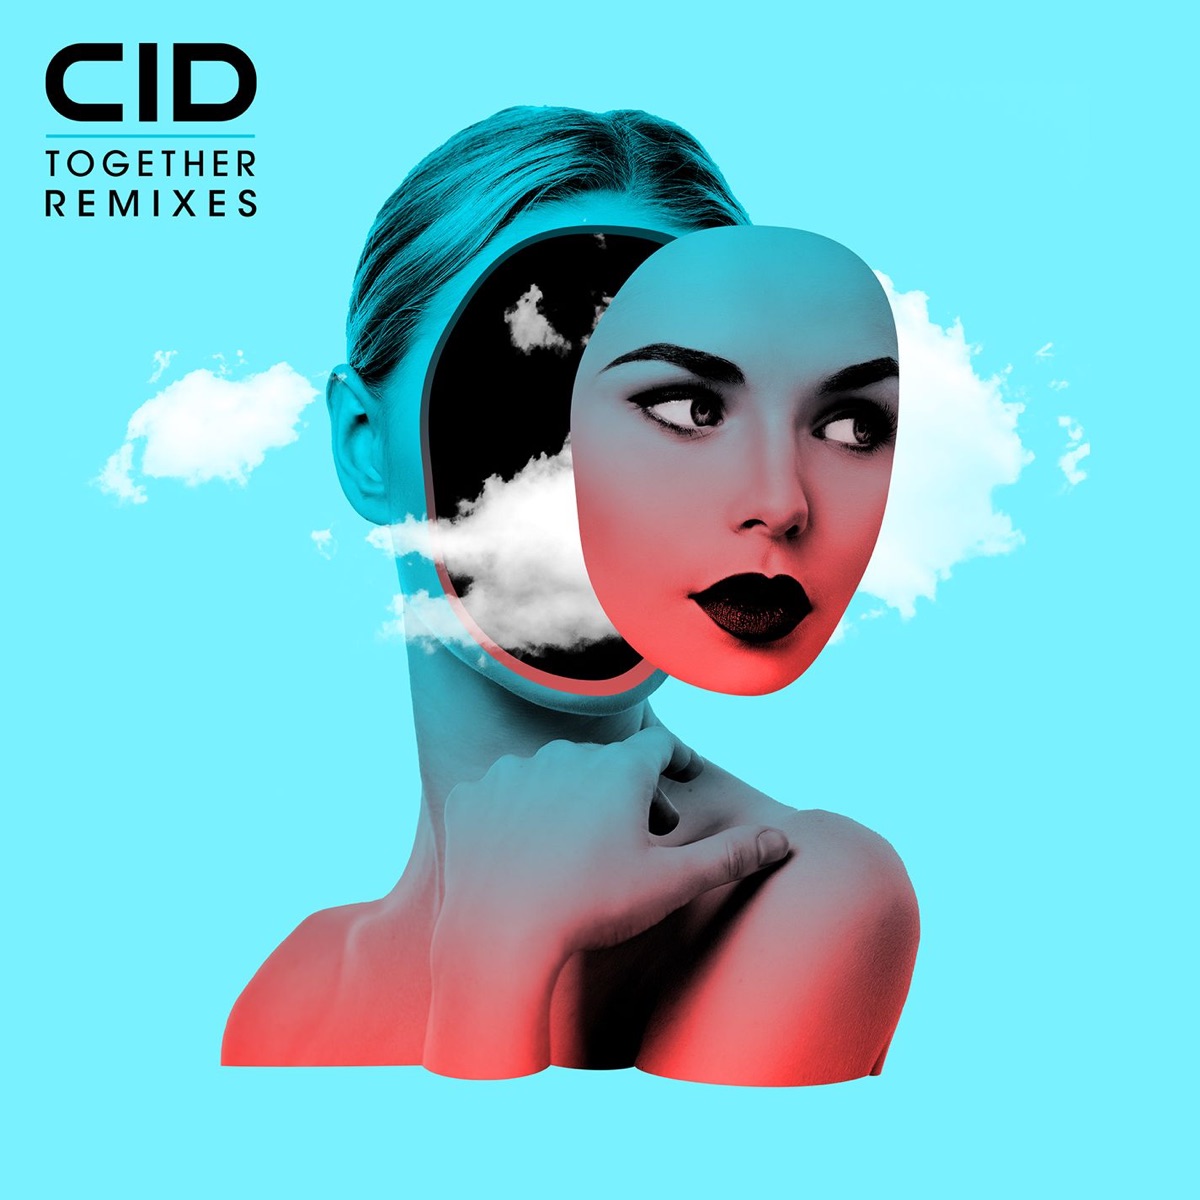 Sweet Memories - Single by CID & Kaskade on Apple Music